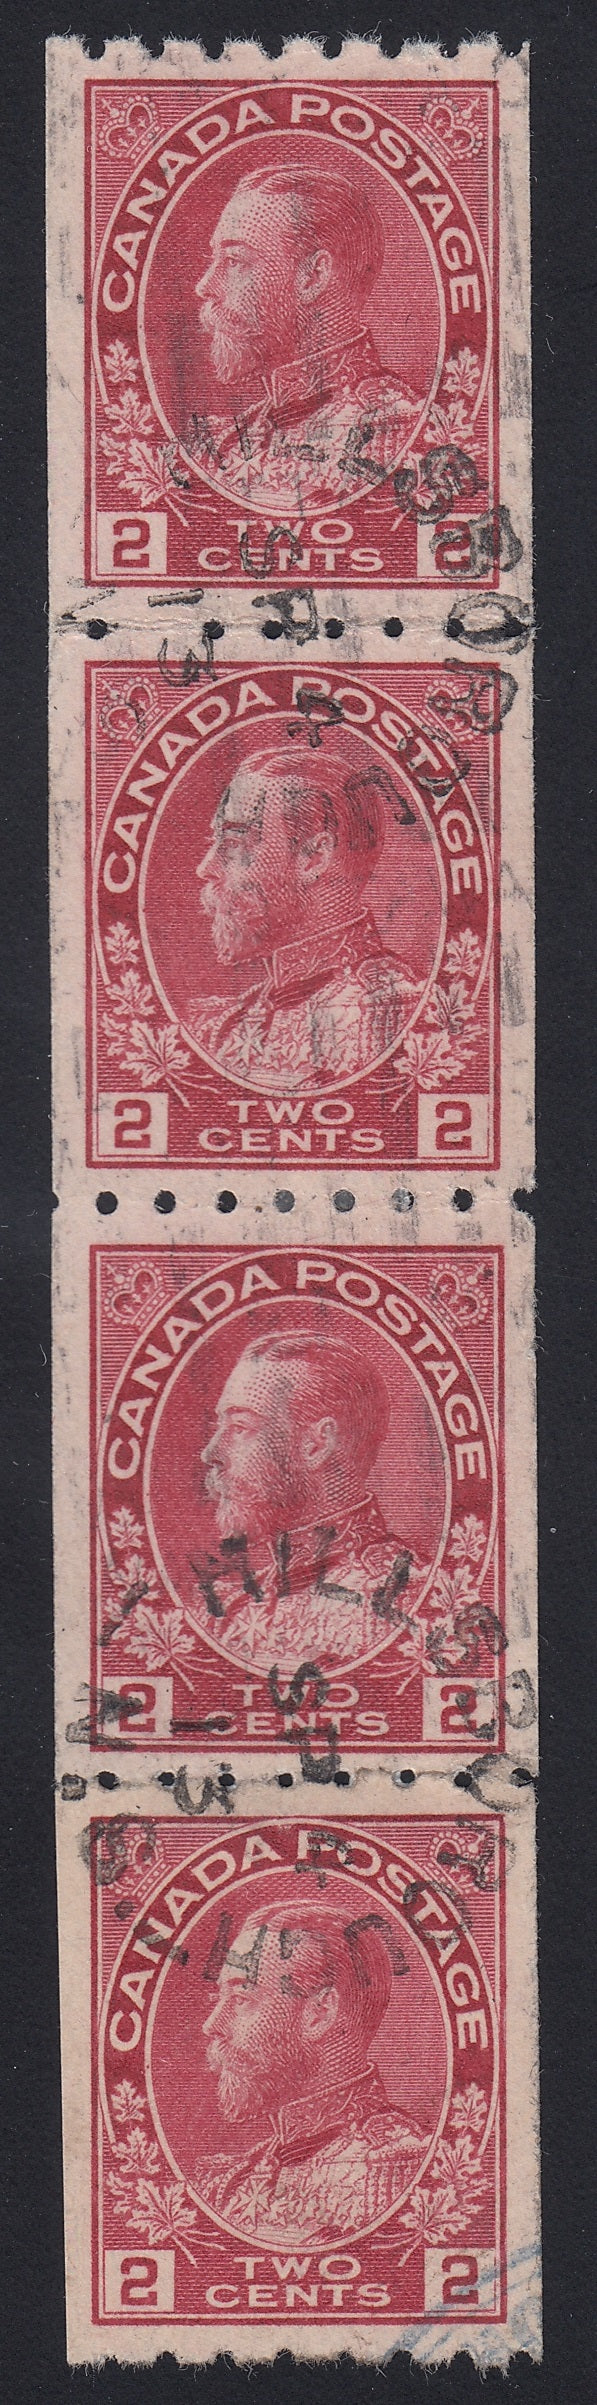 0124CA1803 - Canada #124 Strip of 4